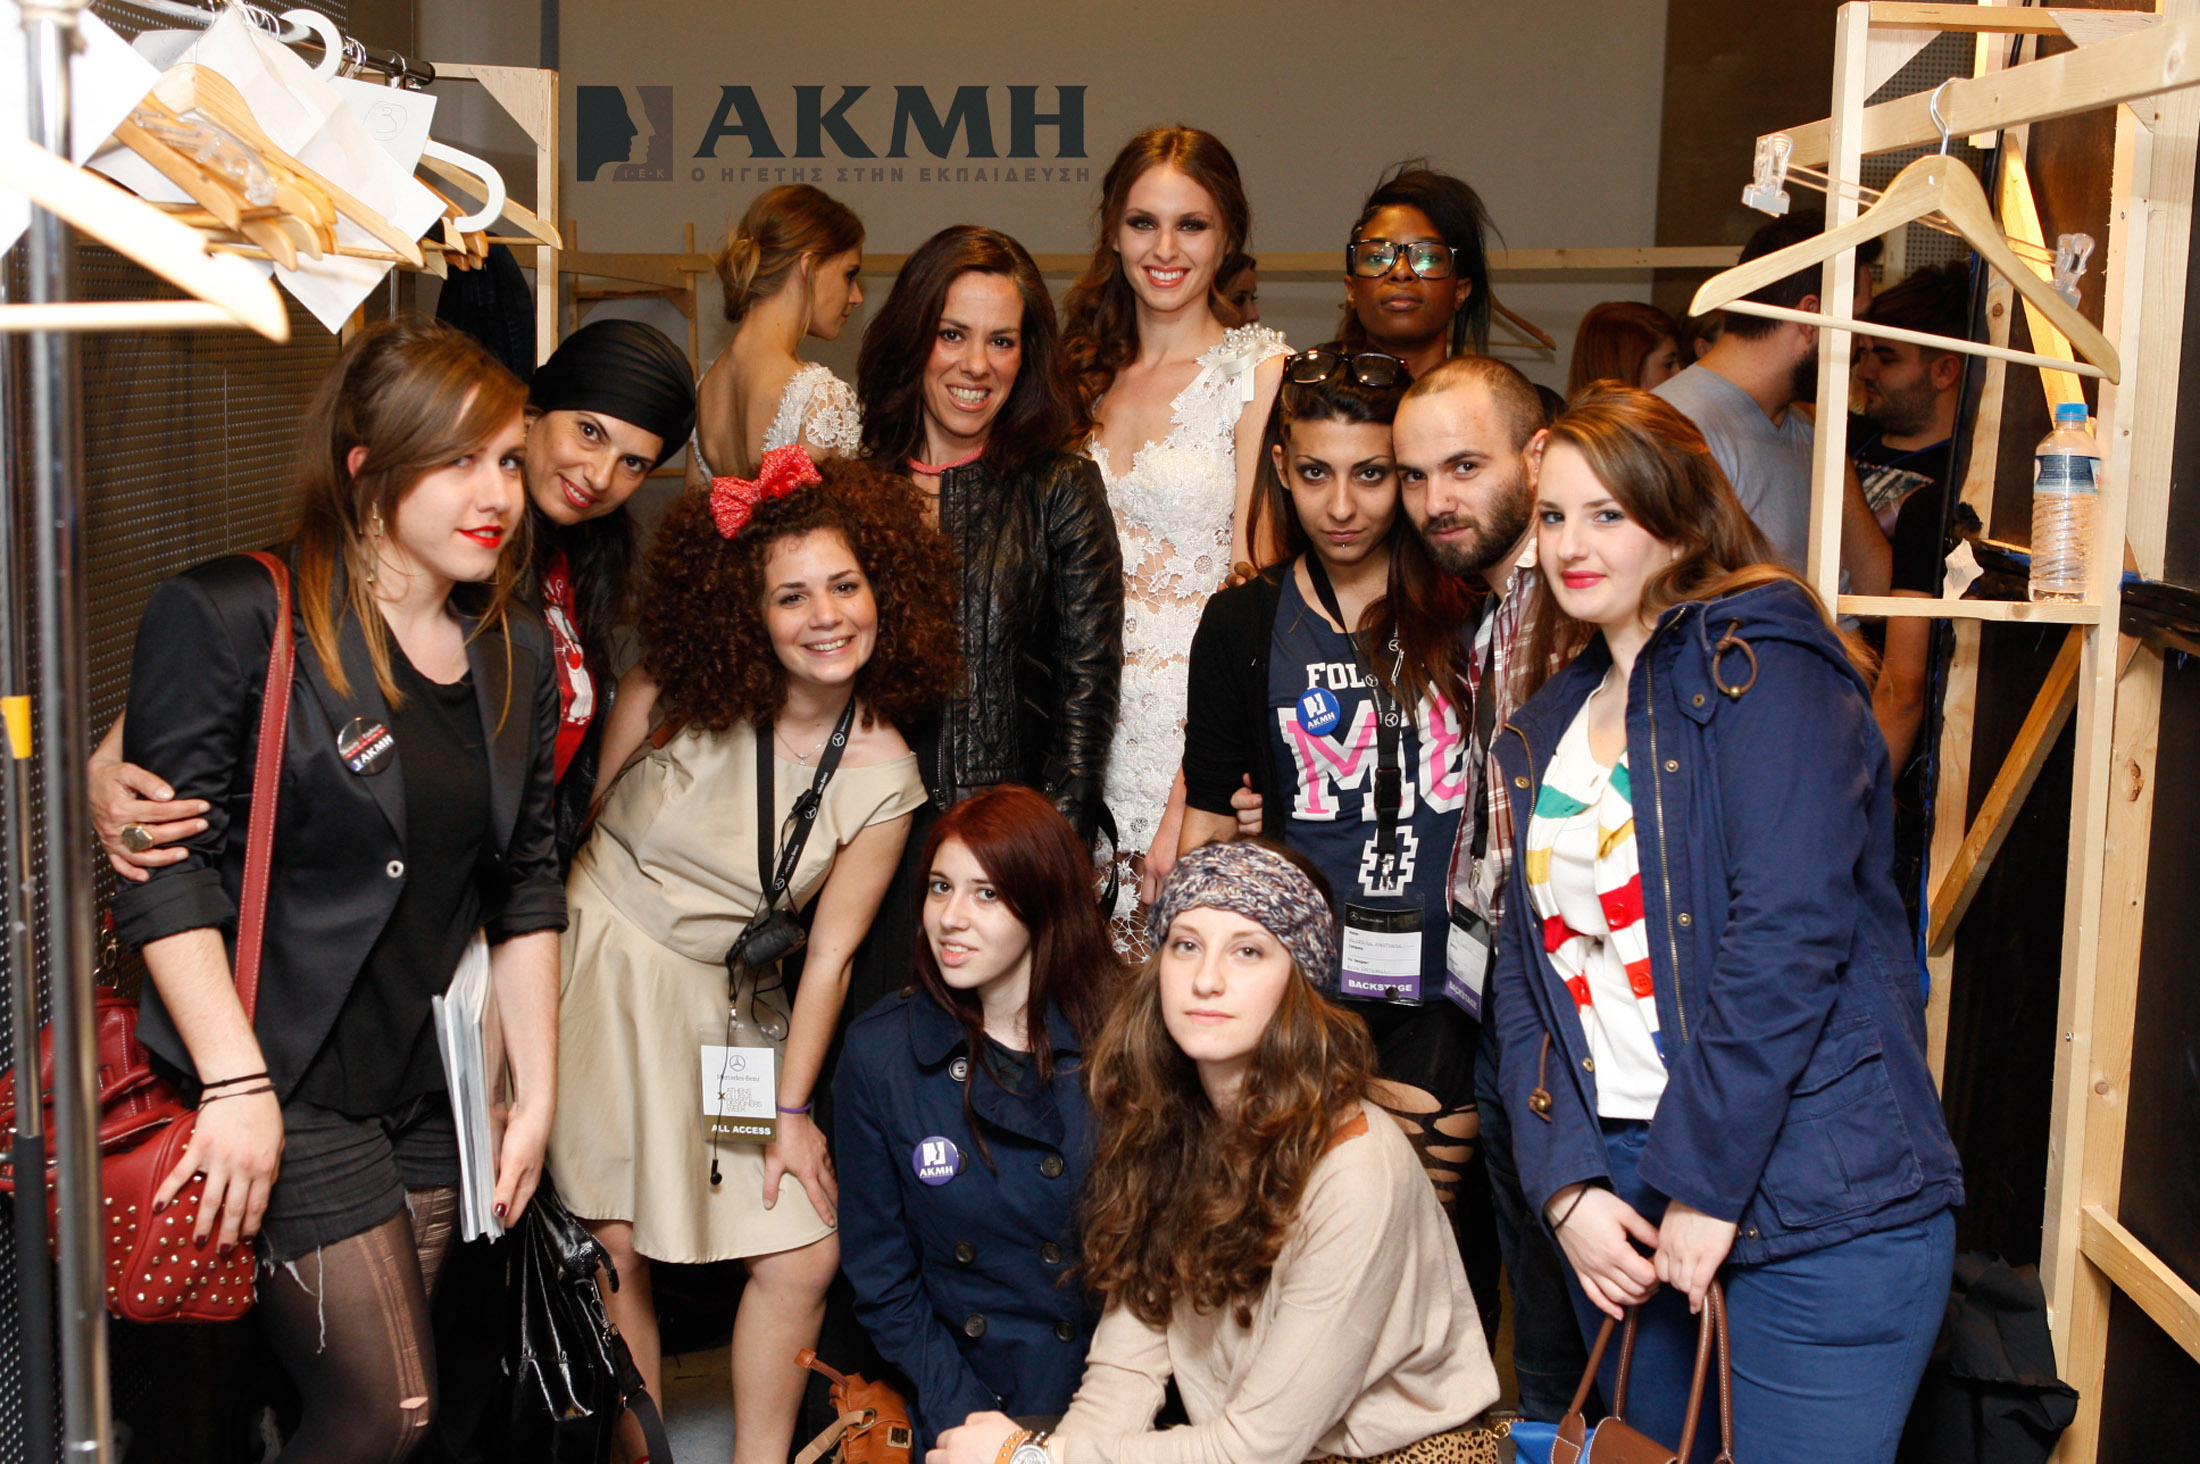 Οι σπουδαστές του ΙΕΚ ΑΚΜΗ κοντά σε μεγάλους Έλληνες σχεδιαστές και την διάσημη Patricia Field